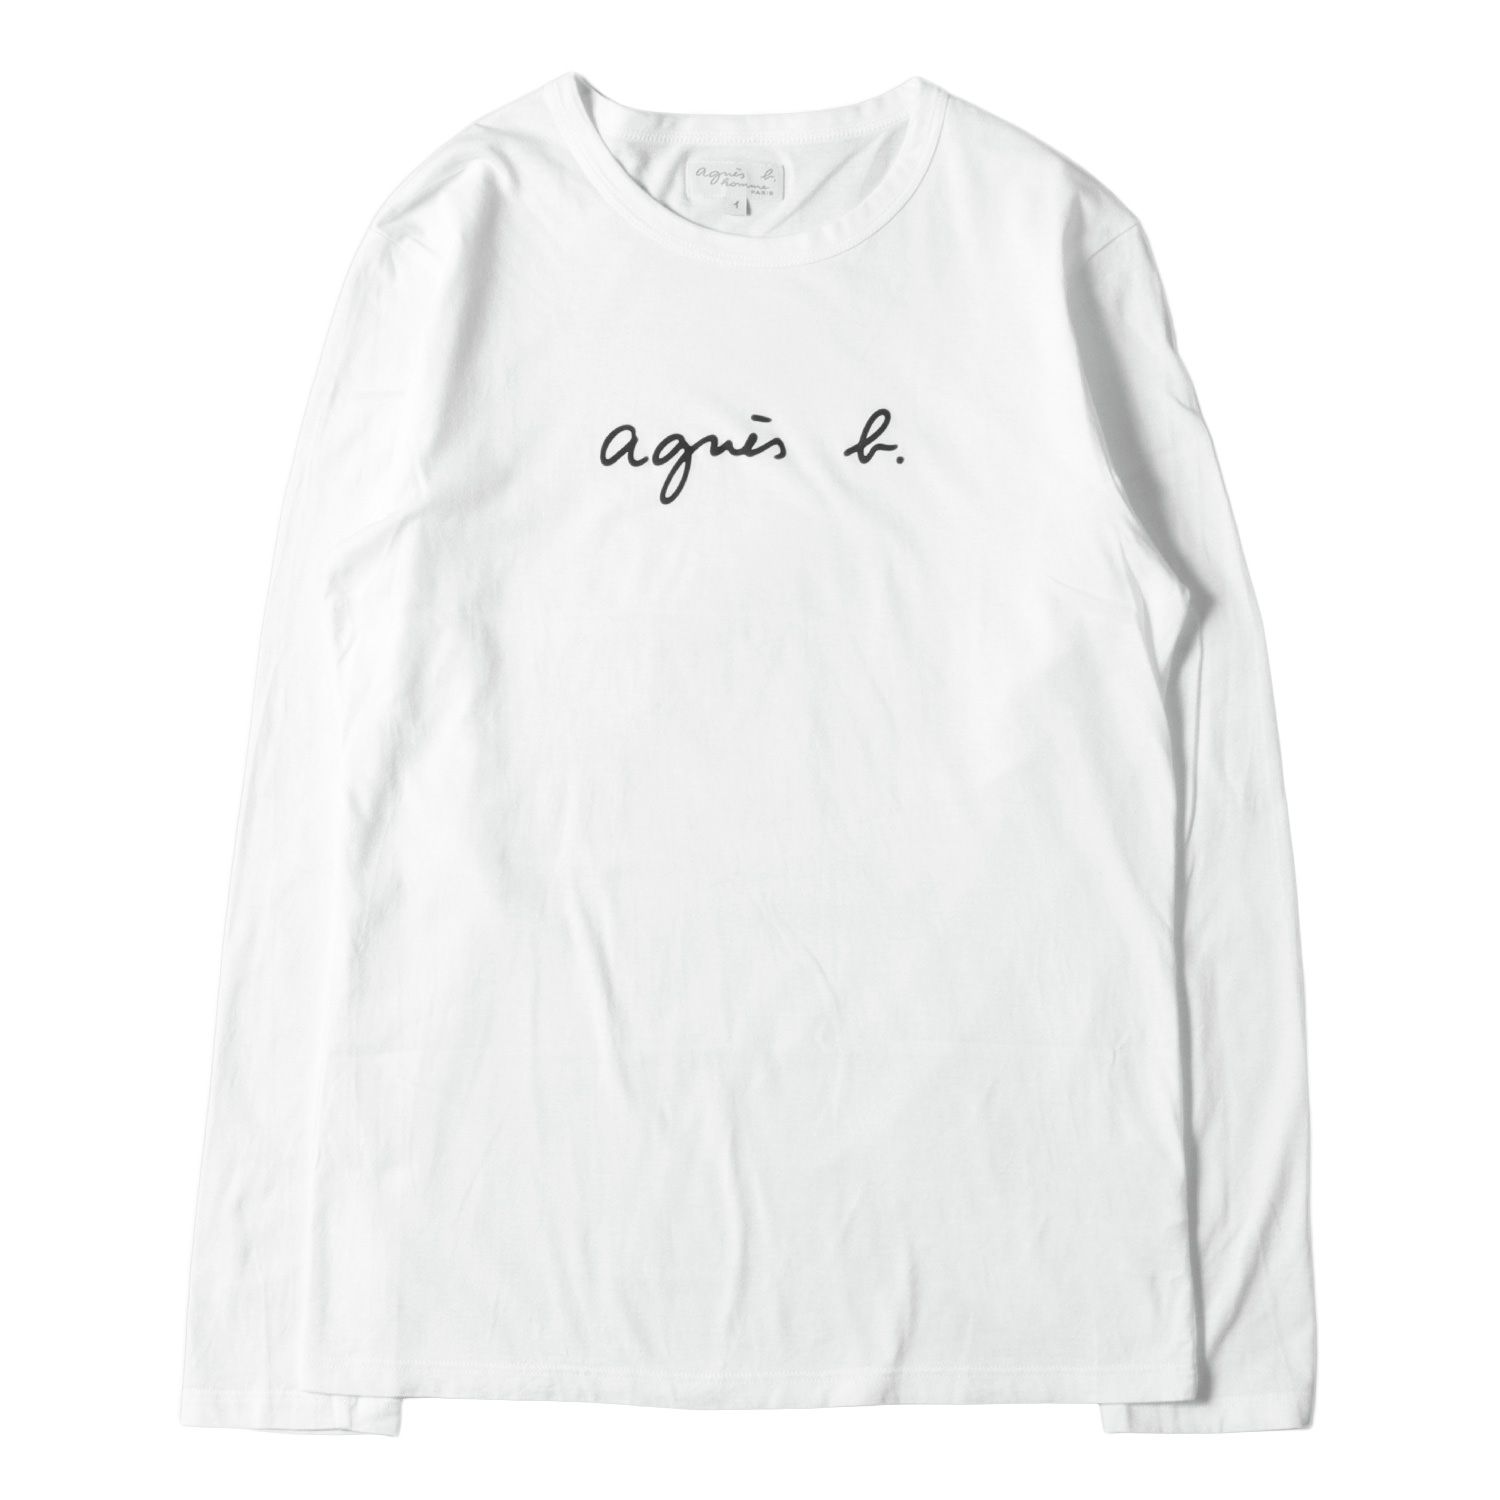 agnes b. アニエスベー Tシャツ サイズ:1 20SS ロゴ プリント